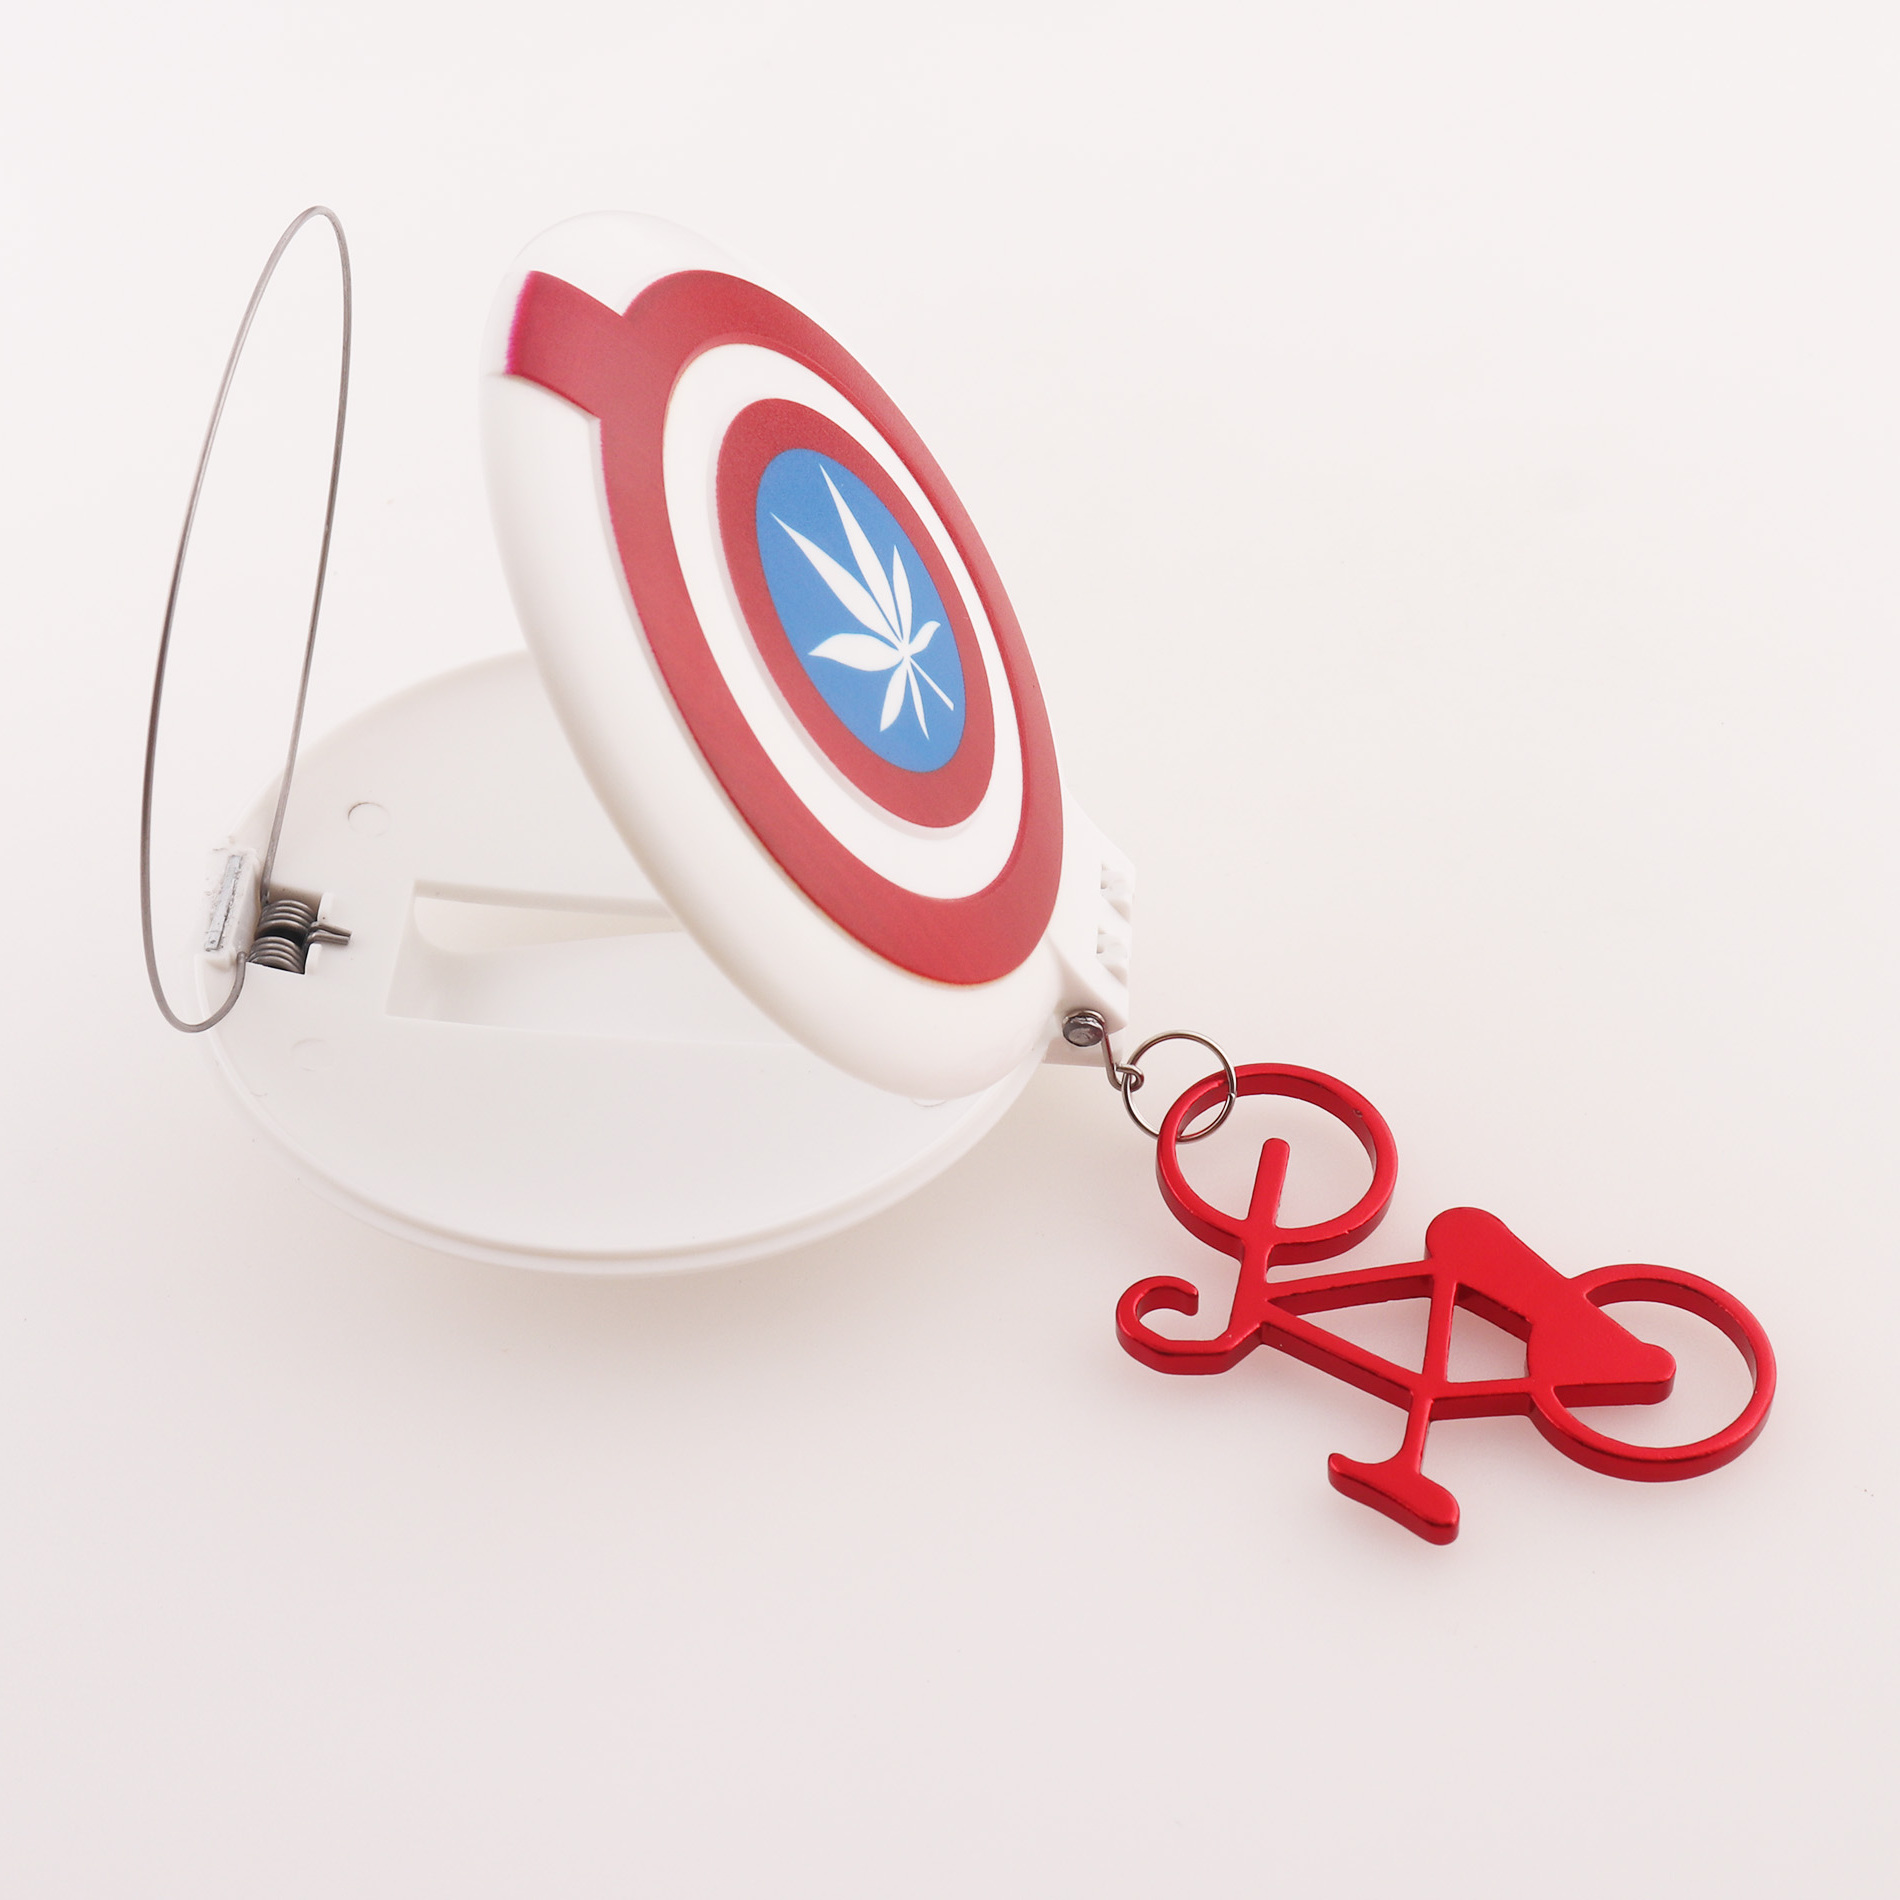 Captain America Neoprene Bottle Holder Keychain